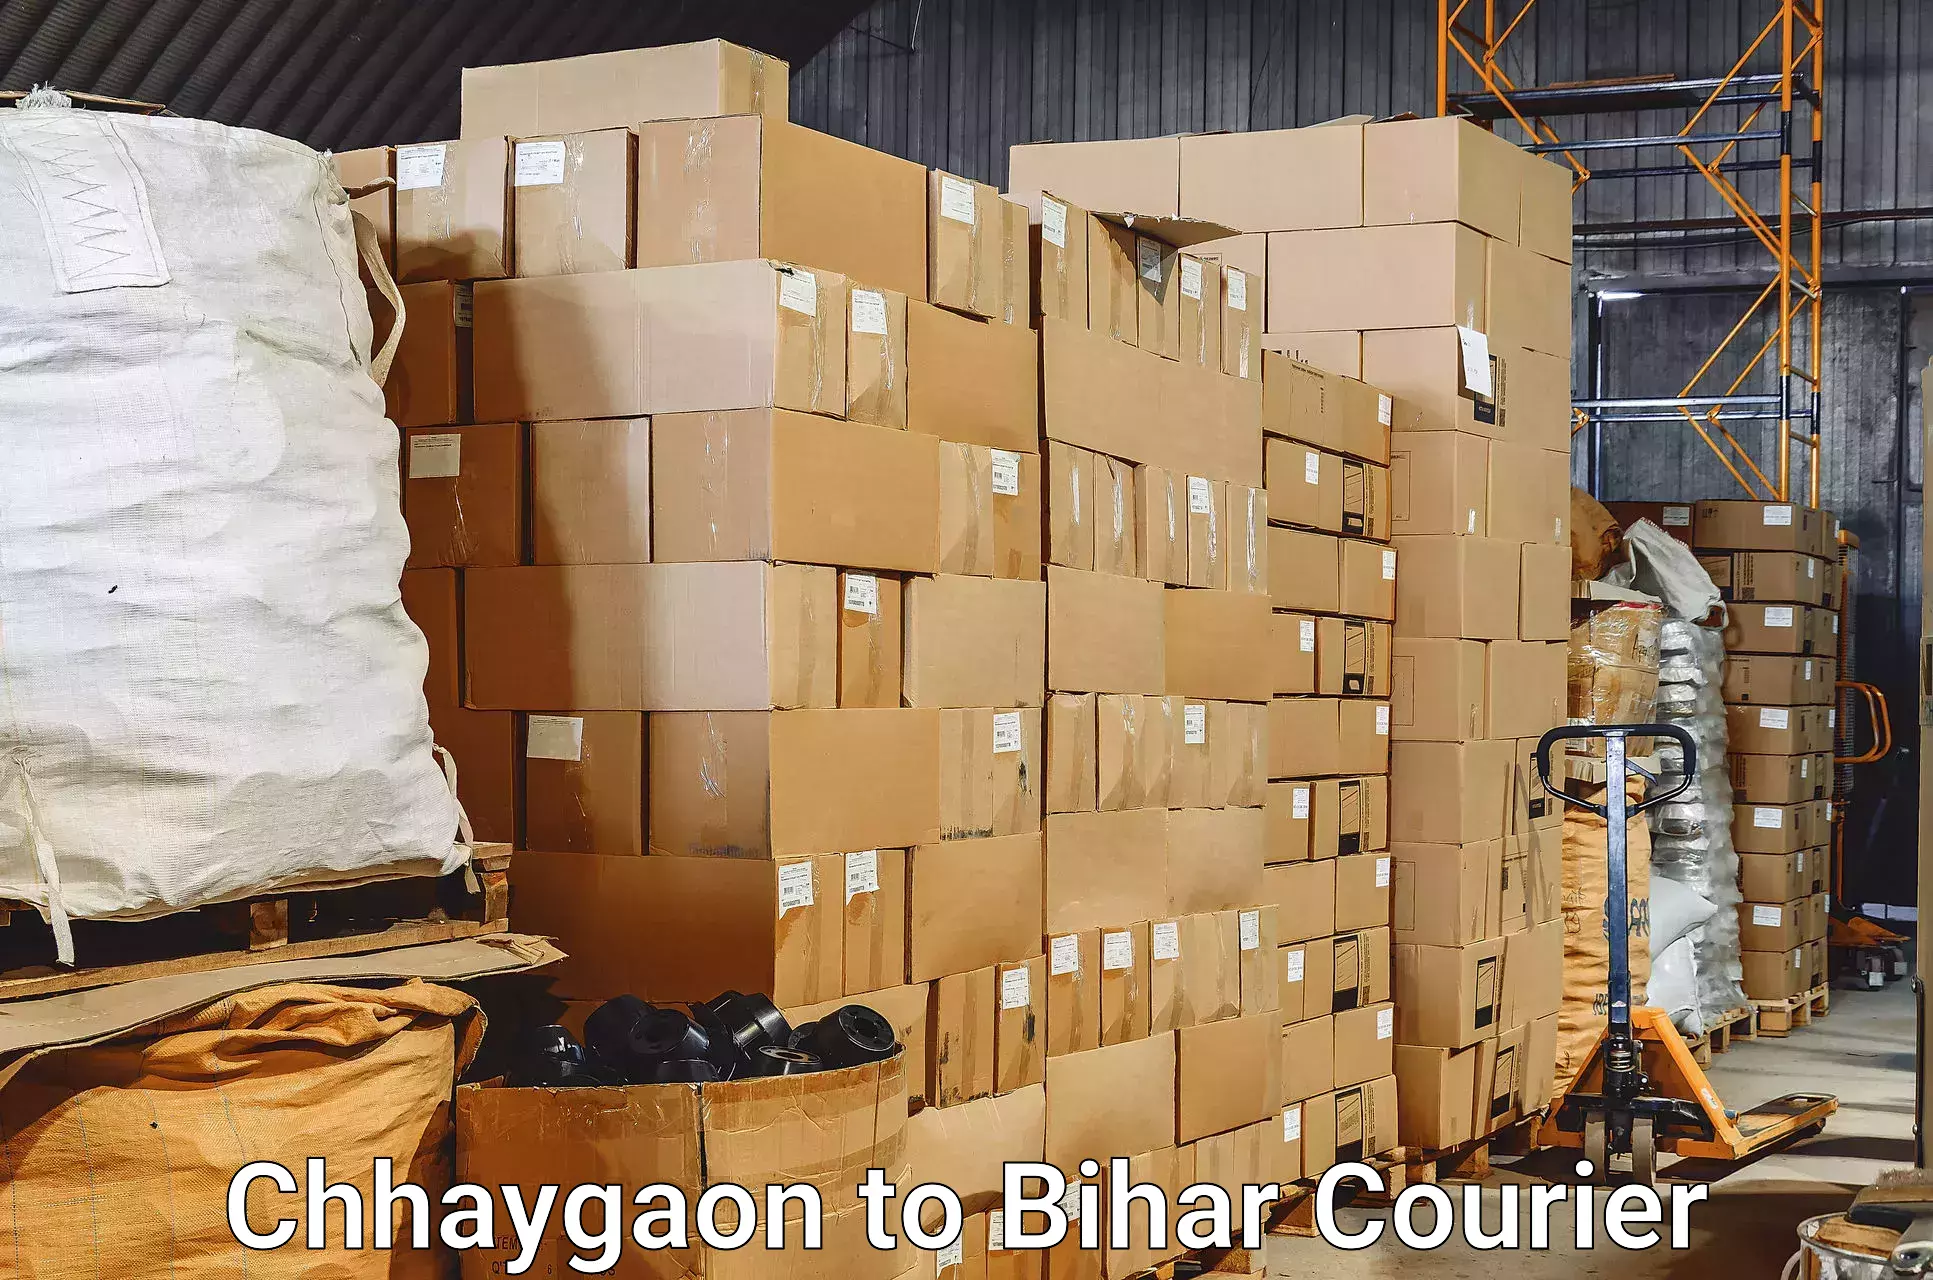 Baggage transport scheduler Chhaygaon to Sandesh